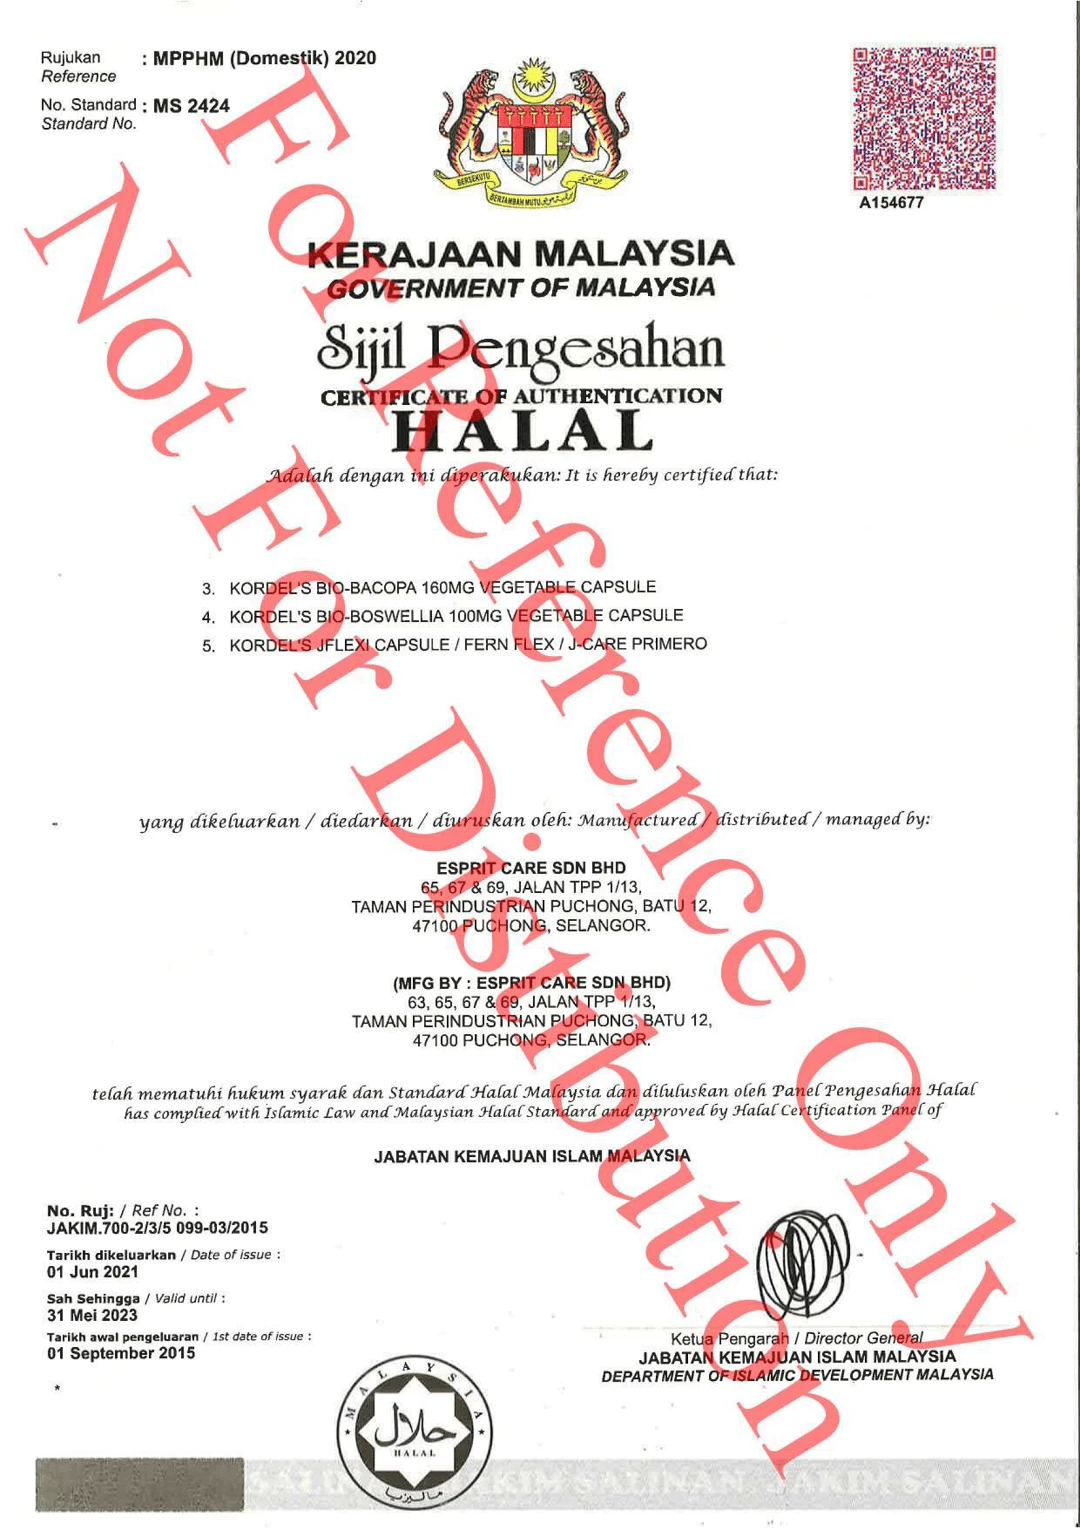 Halal Certification For Kordel's Bio-Bacopa Bio-Boswellia J-Flexi